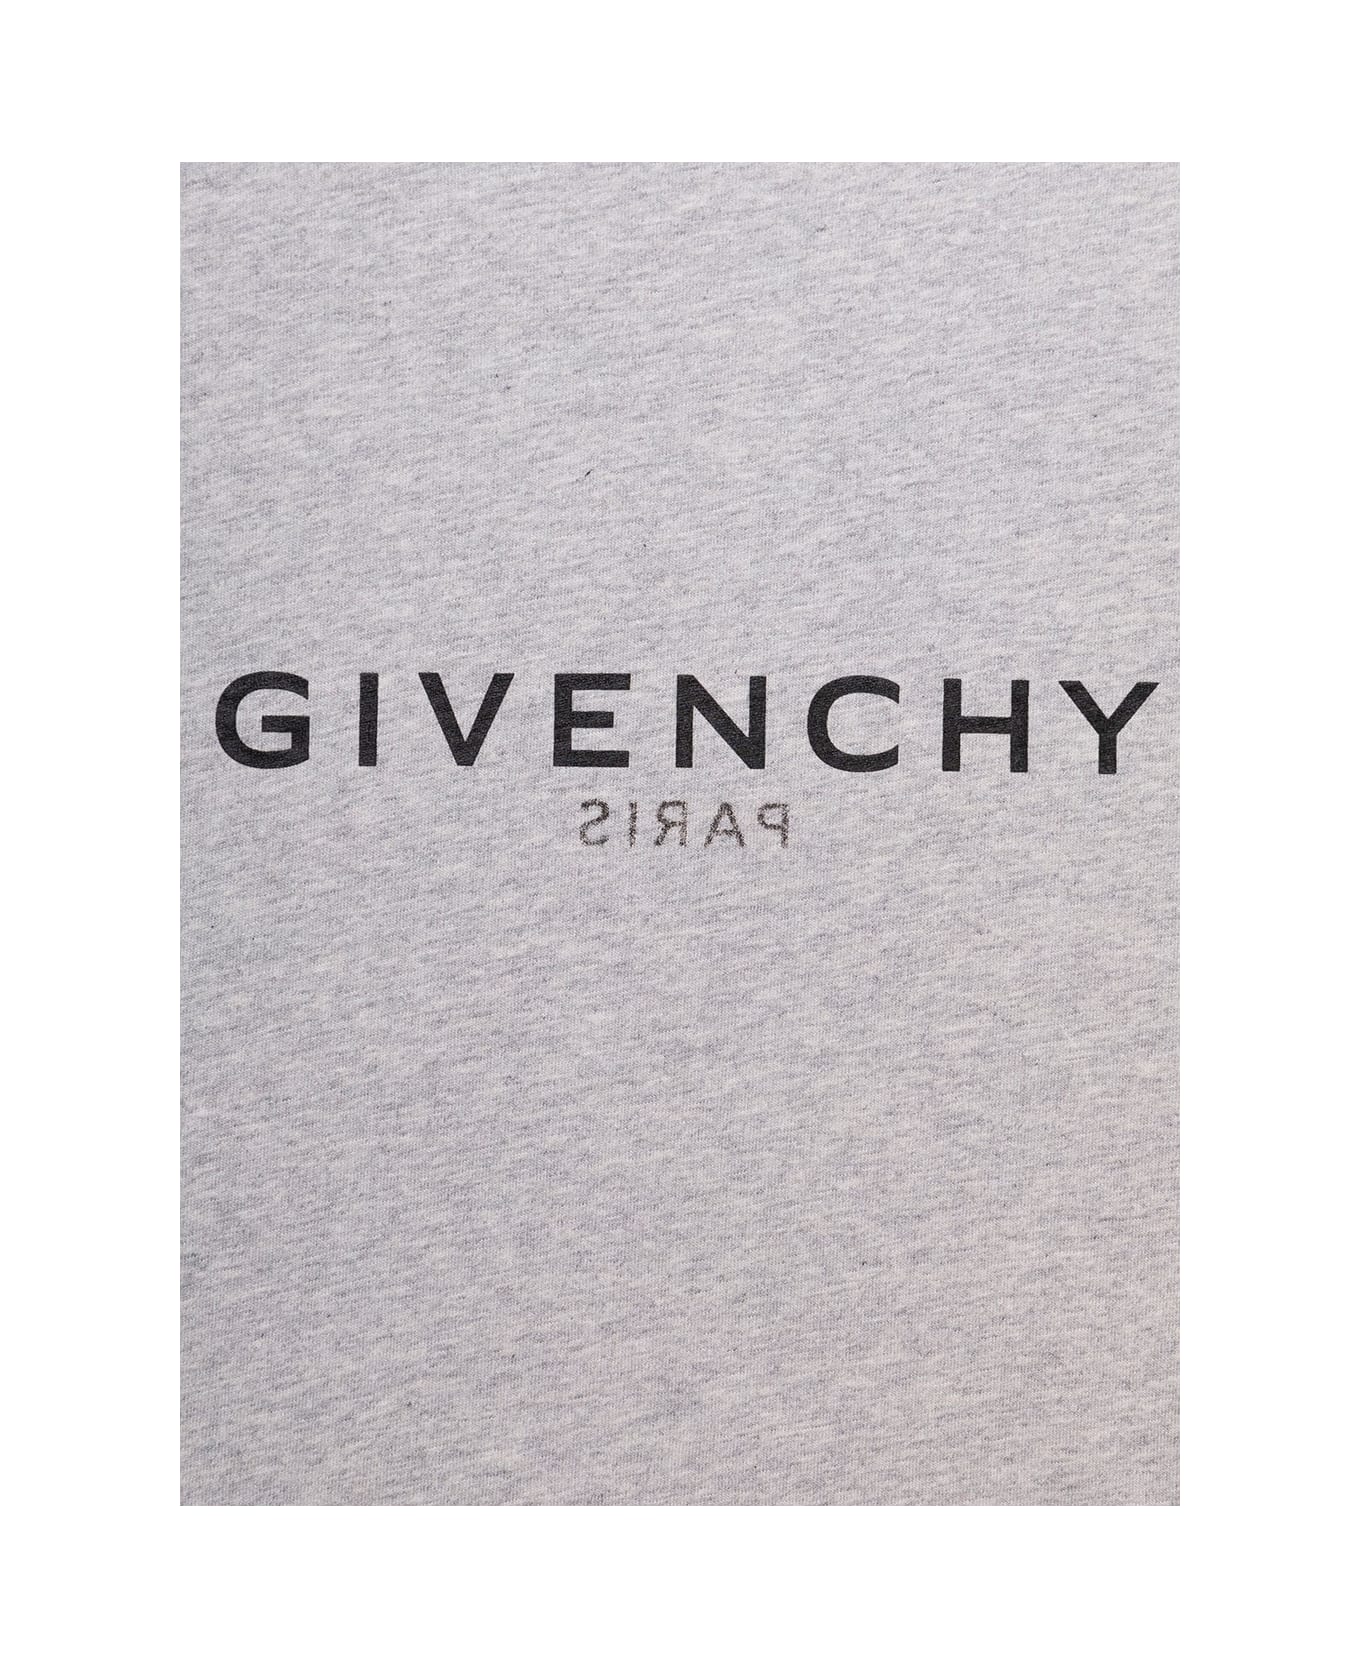 Givenchy H25375ta47 - Grey